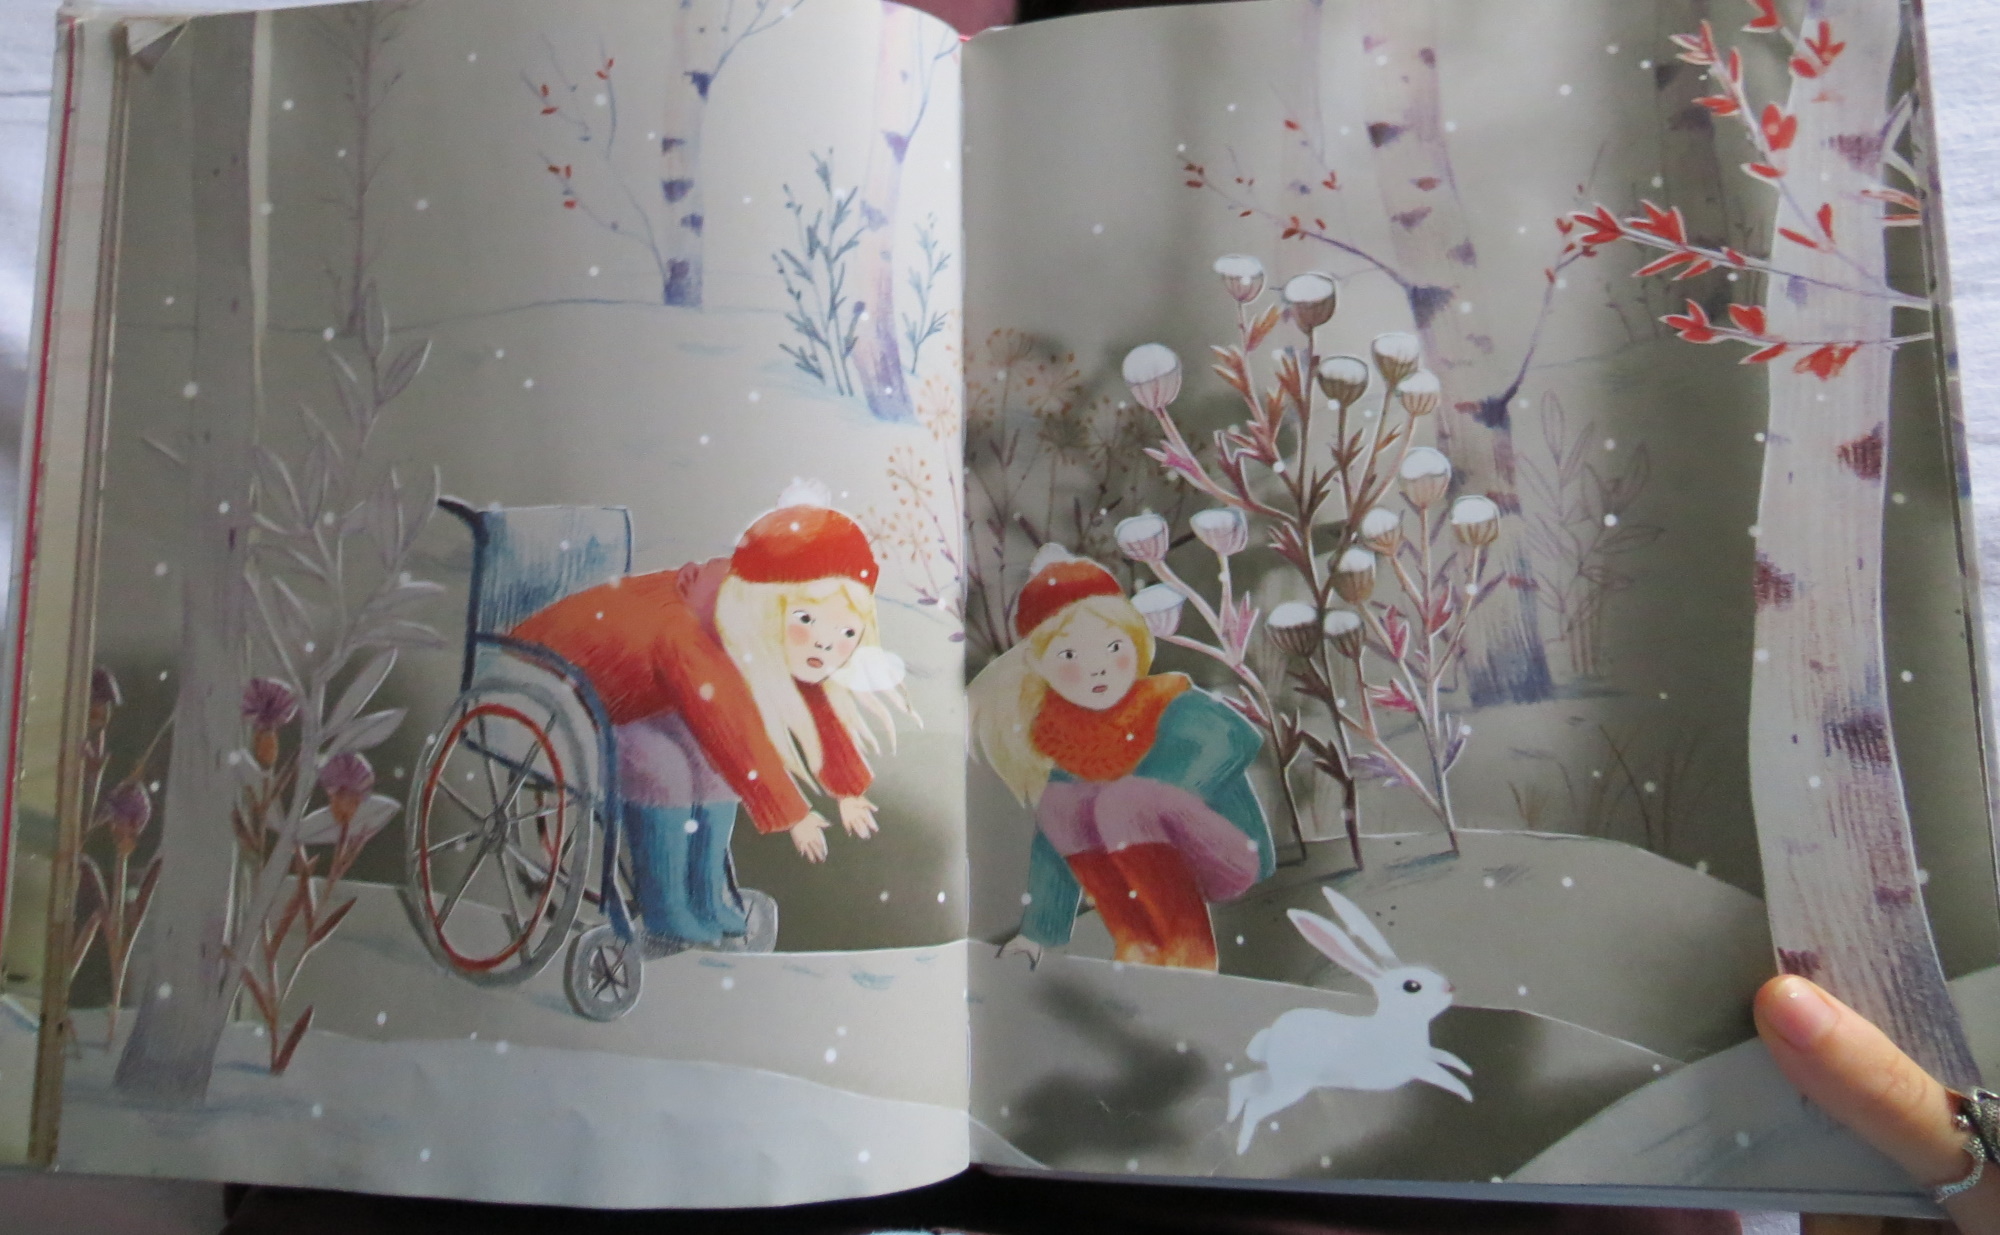 page de Le lapin des neiges de Camille Garoche, on y voit deux jumelles blondes dans la neige, l'une est en fauteuil roulant et un lapin vient de bondir de ses genoux, elles le regardent avec un air étonné et inquiet